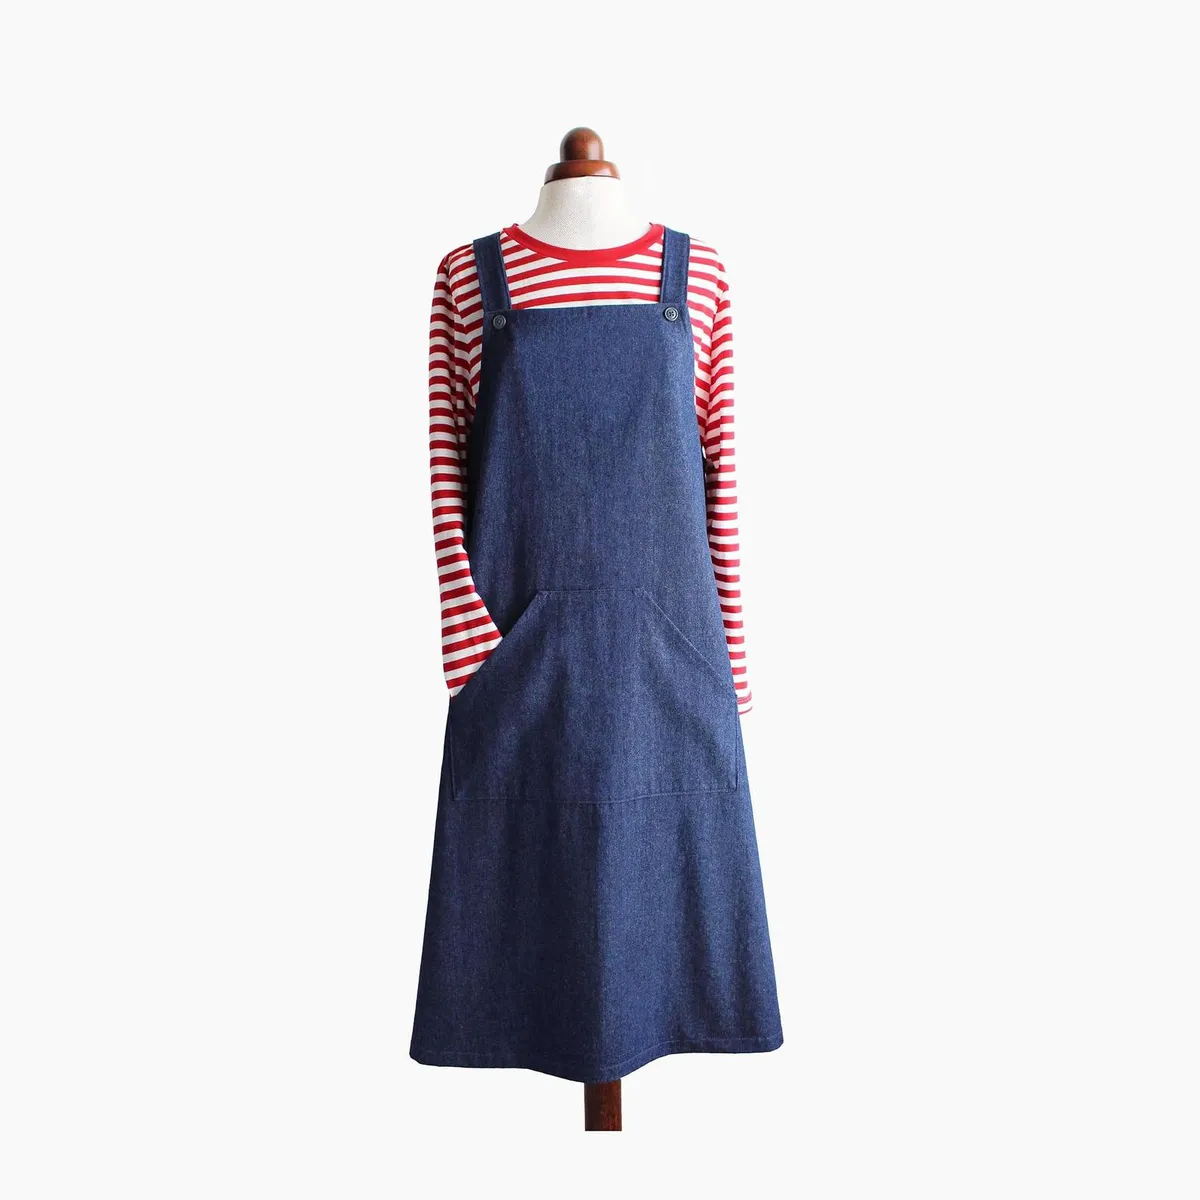 Sewing Pattern PDF Dungarees / Pinafore Dress / Bib Skirt / for